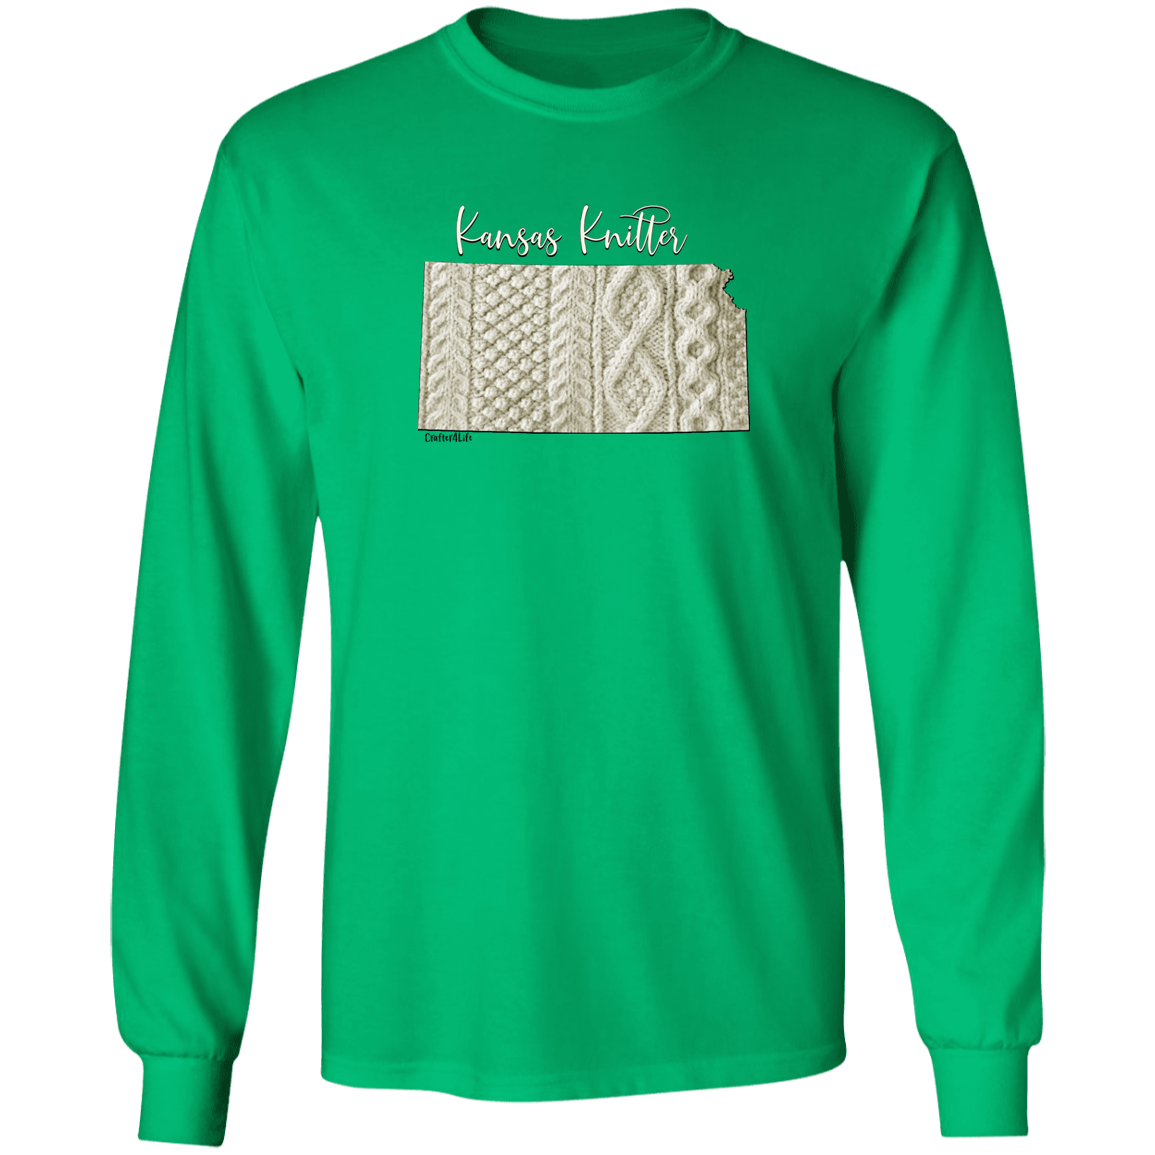 Kansas Knitter LS Ultra Cotton T-Shirt